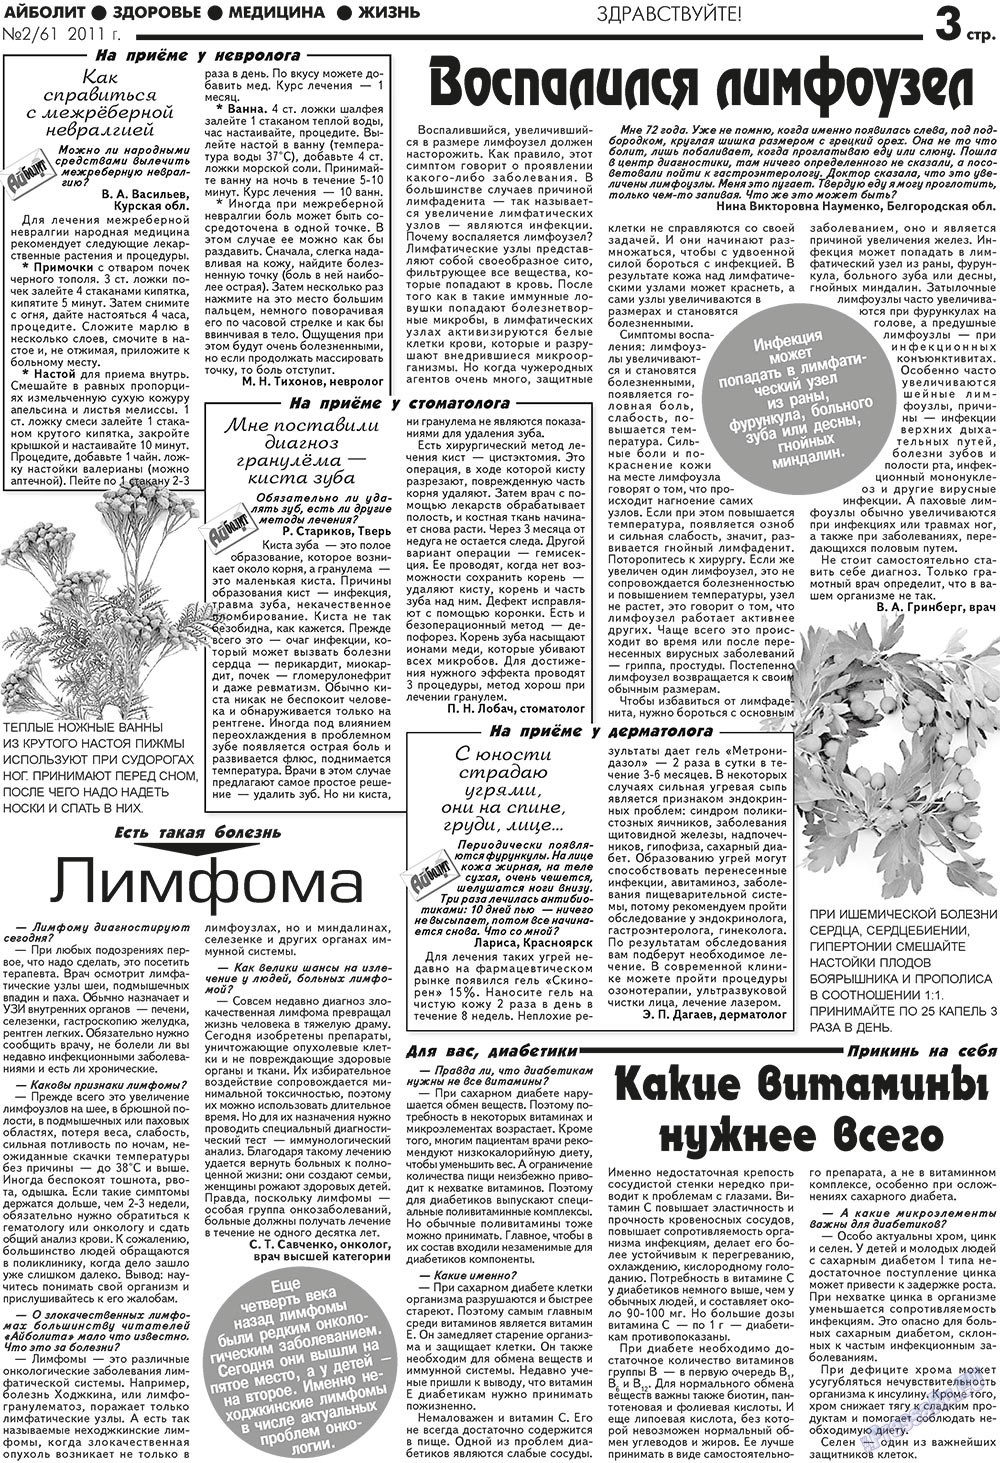 АйБолит, газета. 2011 №2 стр.3